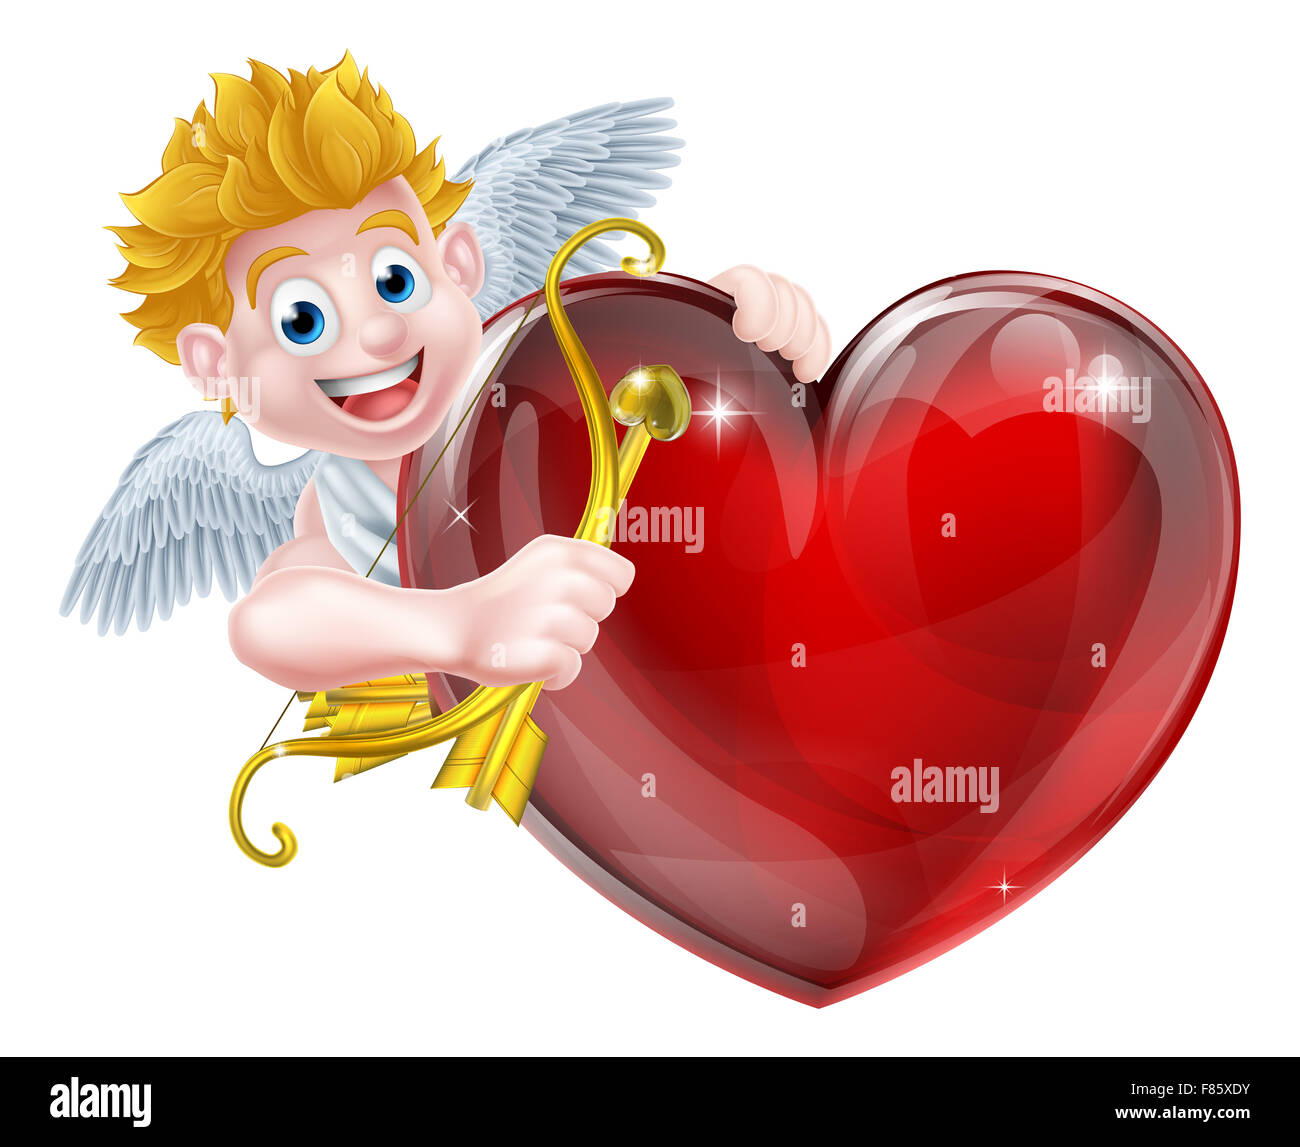 Cupido Lanza Flecha De Amor Con Arco Concepto Del Día De San Valentín  Flechas De Amor ángel Con Arco Y Flecha PNG ,dibujos Flecha De Cupido,  Cupido, Romántico PNG Imagen para Descarga